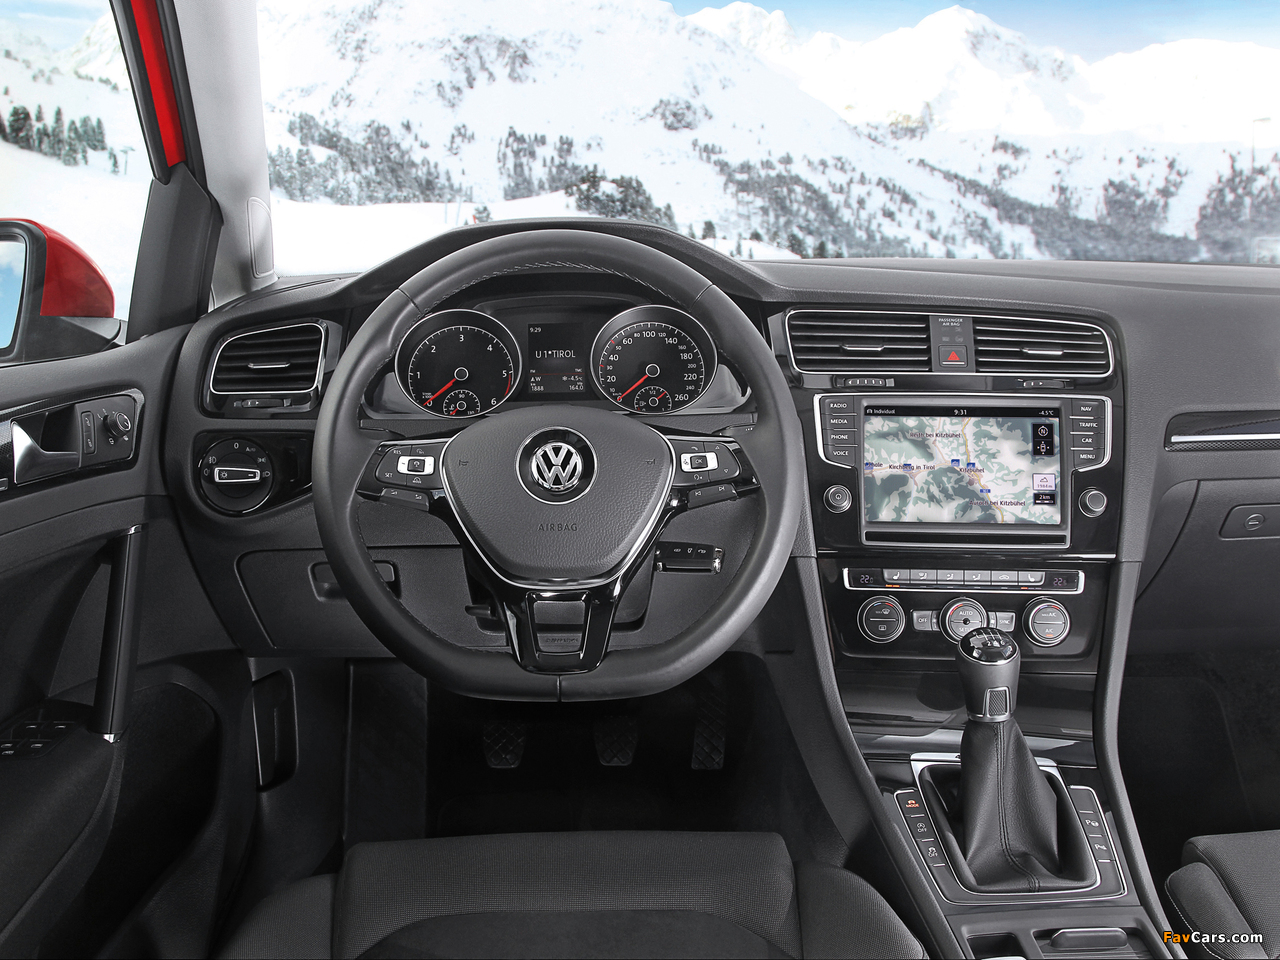 Volkswagen Golf TDI 4MOTION 5-door (Typ 5G) 2013 images (1280 x 960)